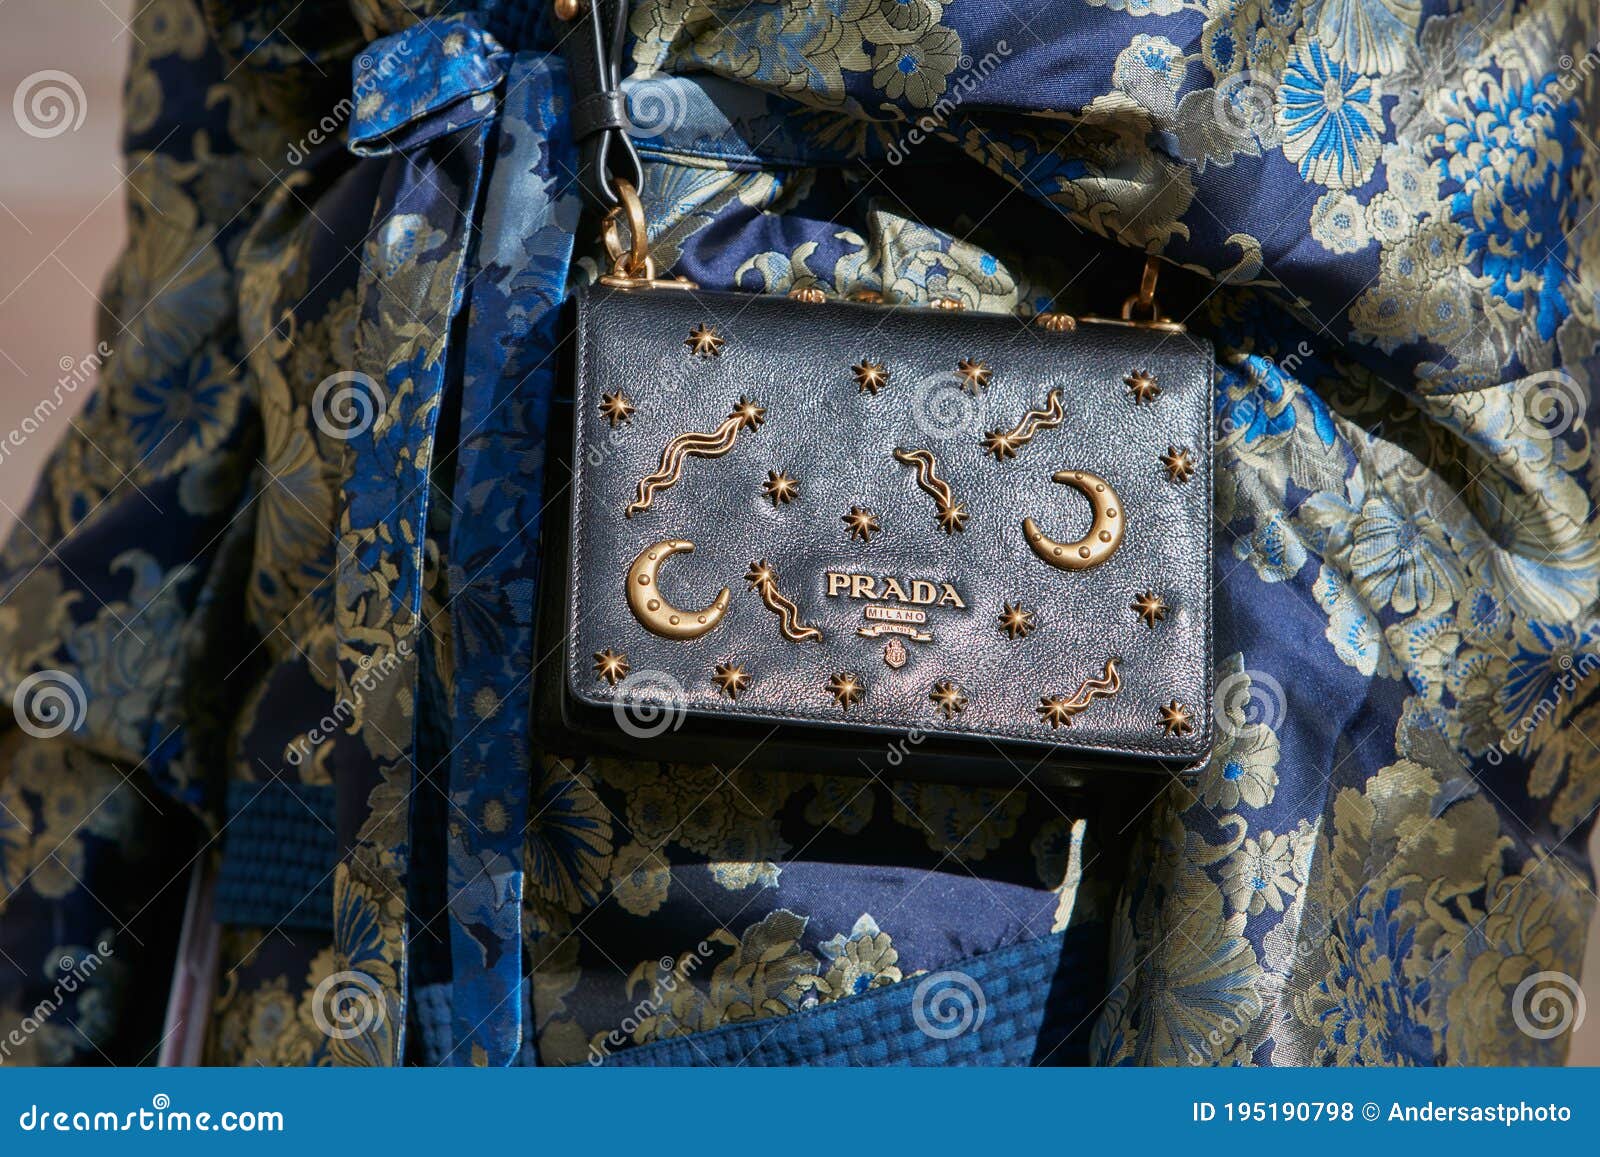 prada bag with stars and moons